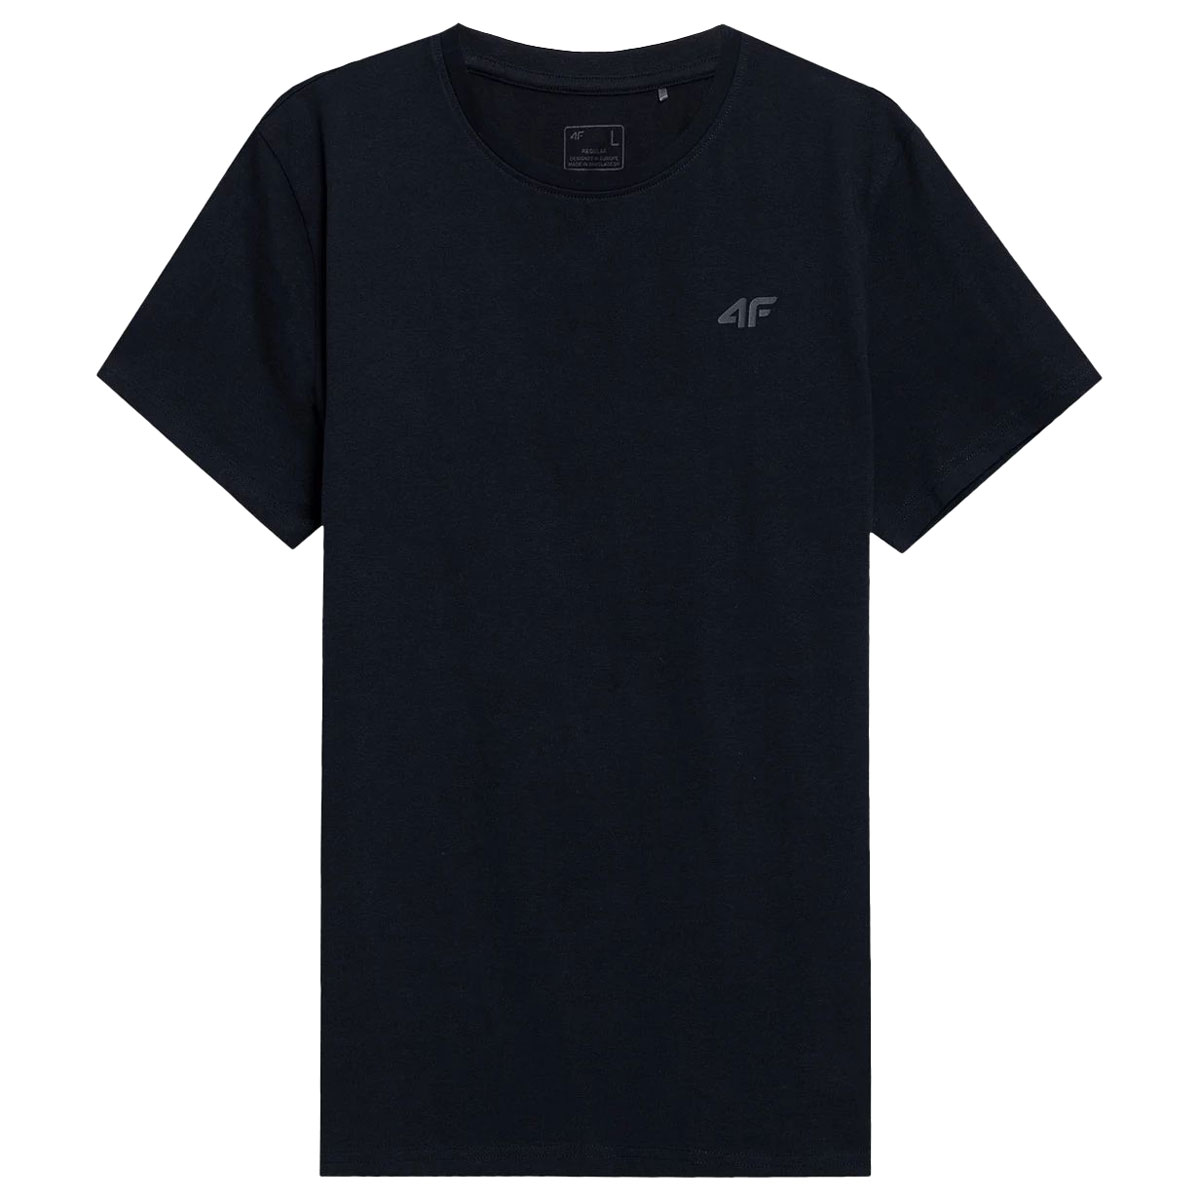 Футболка T-shirt 4F TTSHM536 Глибокий Чорний/Темний Сірий/Темний Синій - 3 шт.